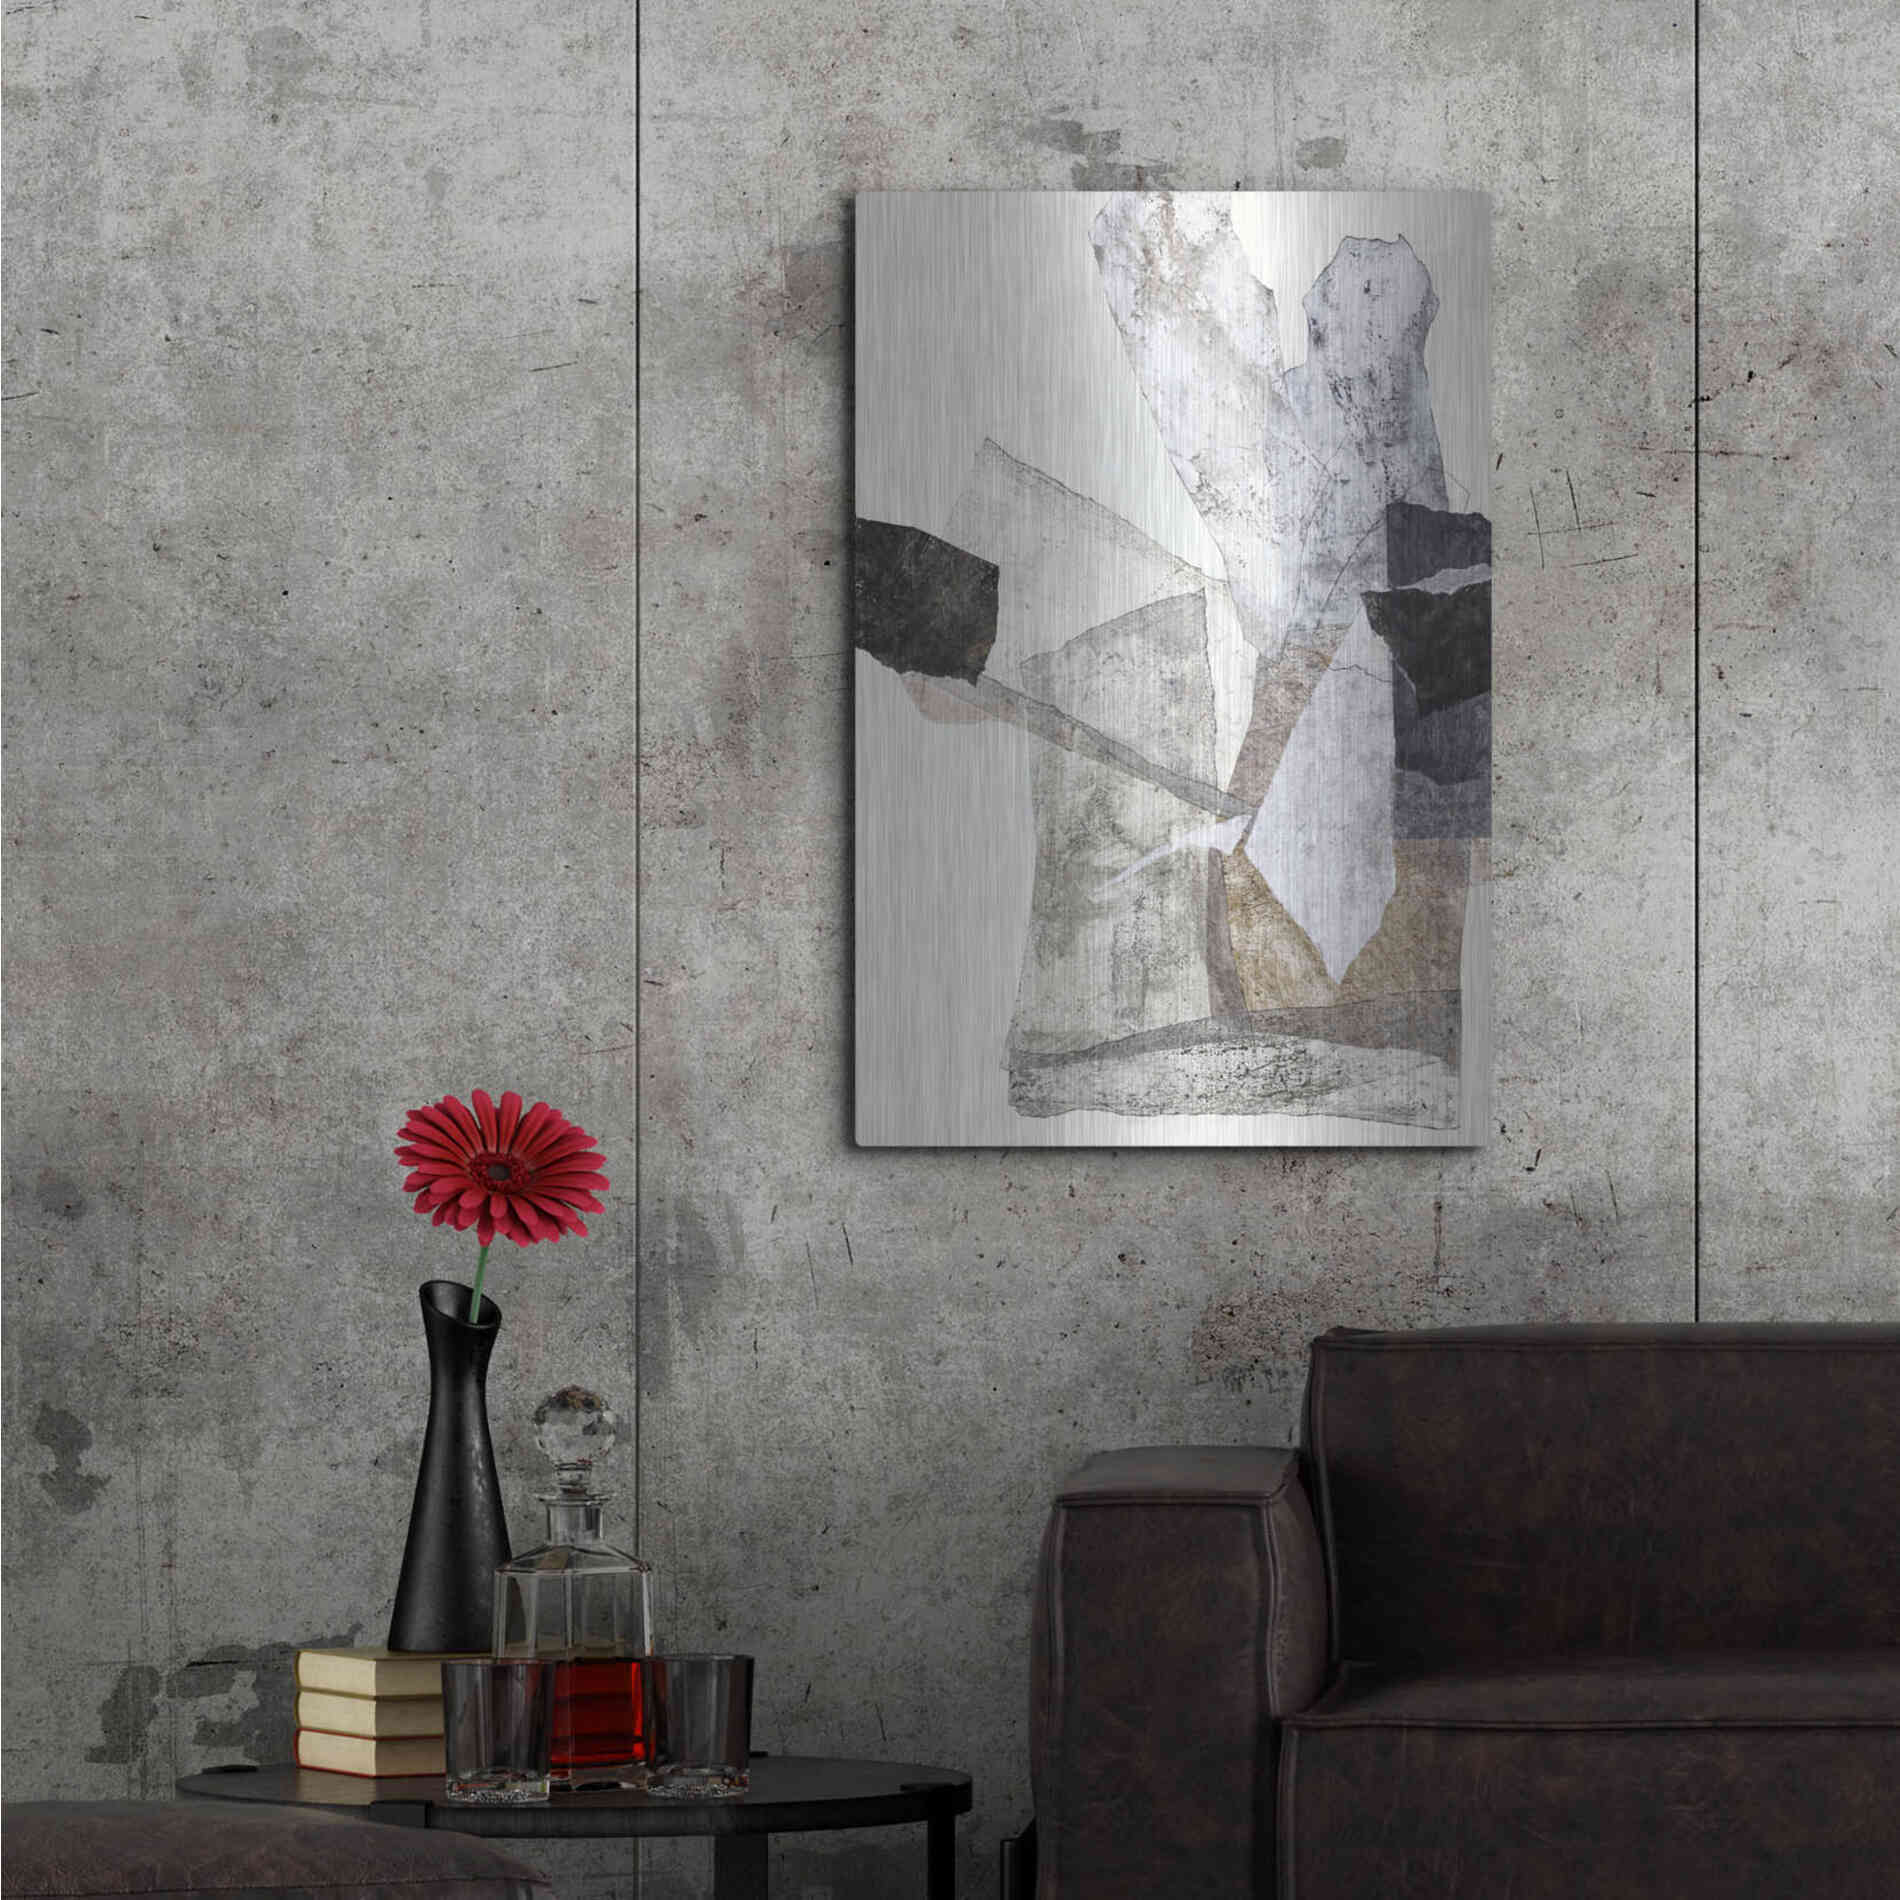 Luxe Metal Art 'Organza 1' by Design Fabrikken, Metal Wall Art,24x36